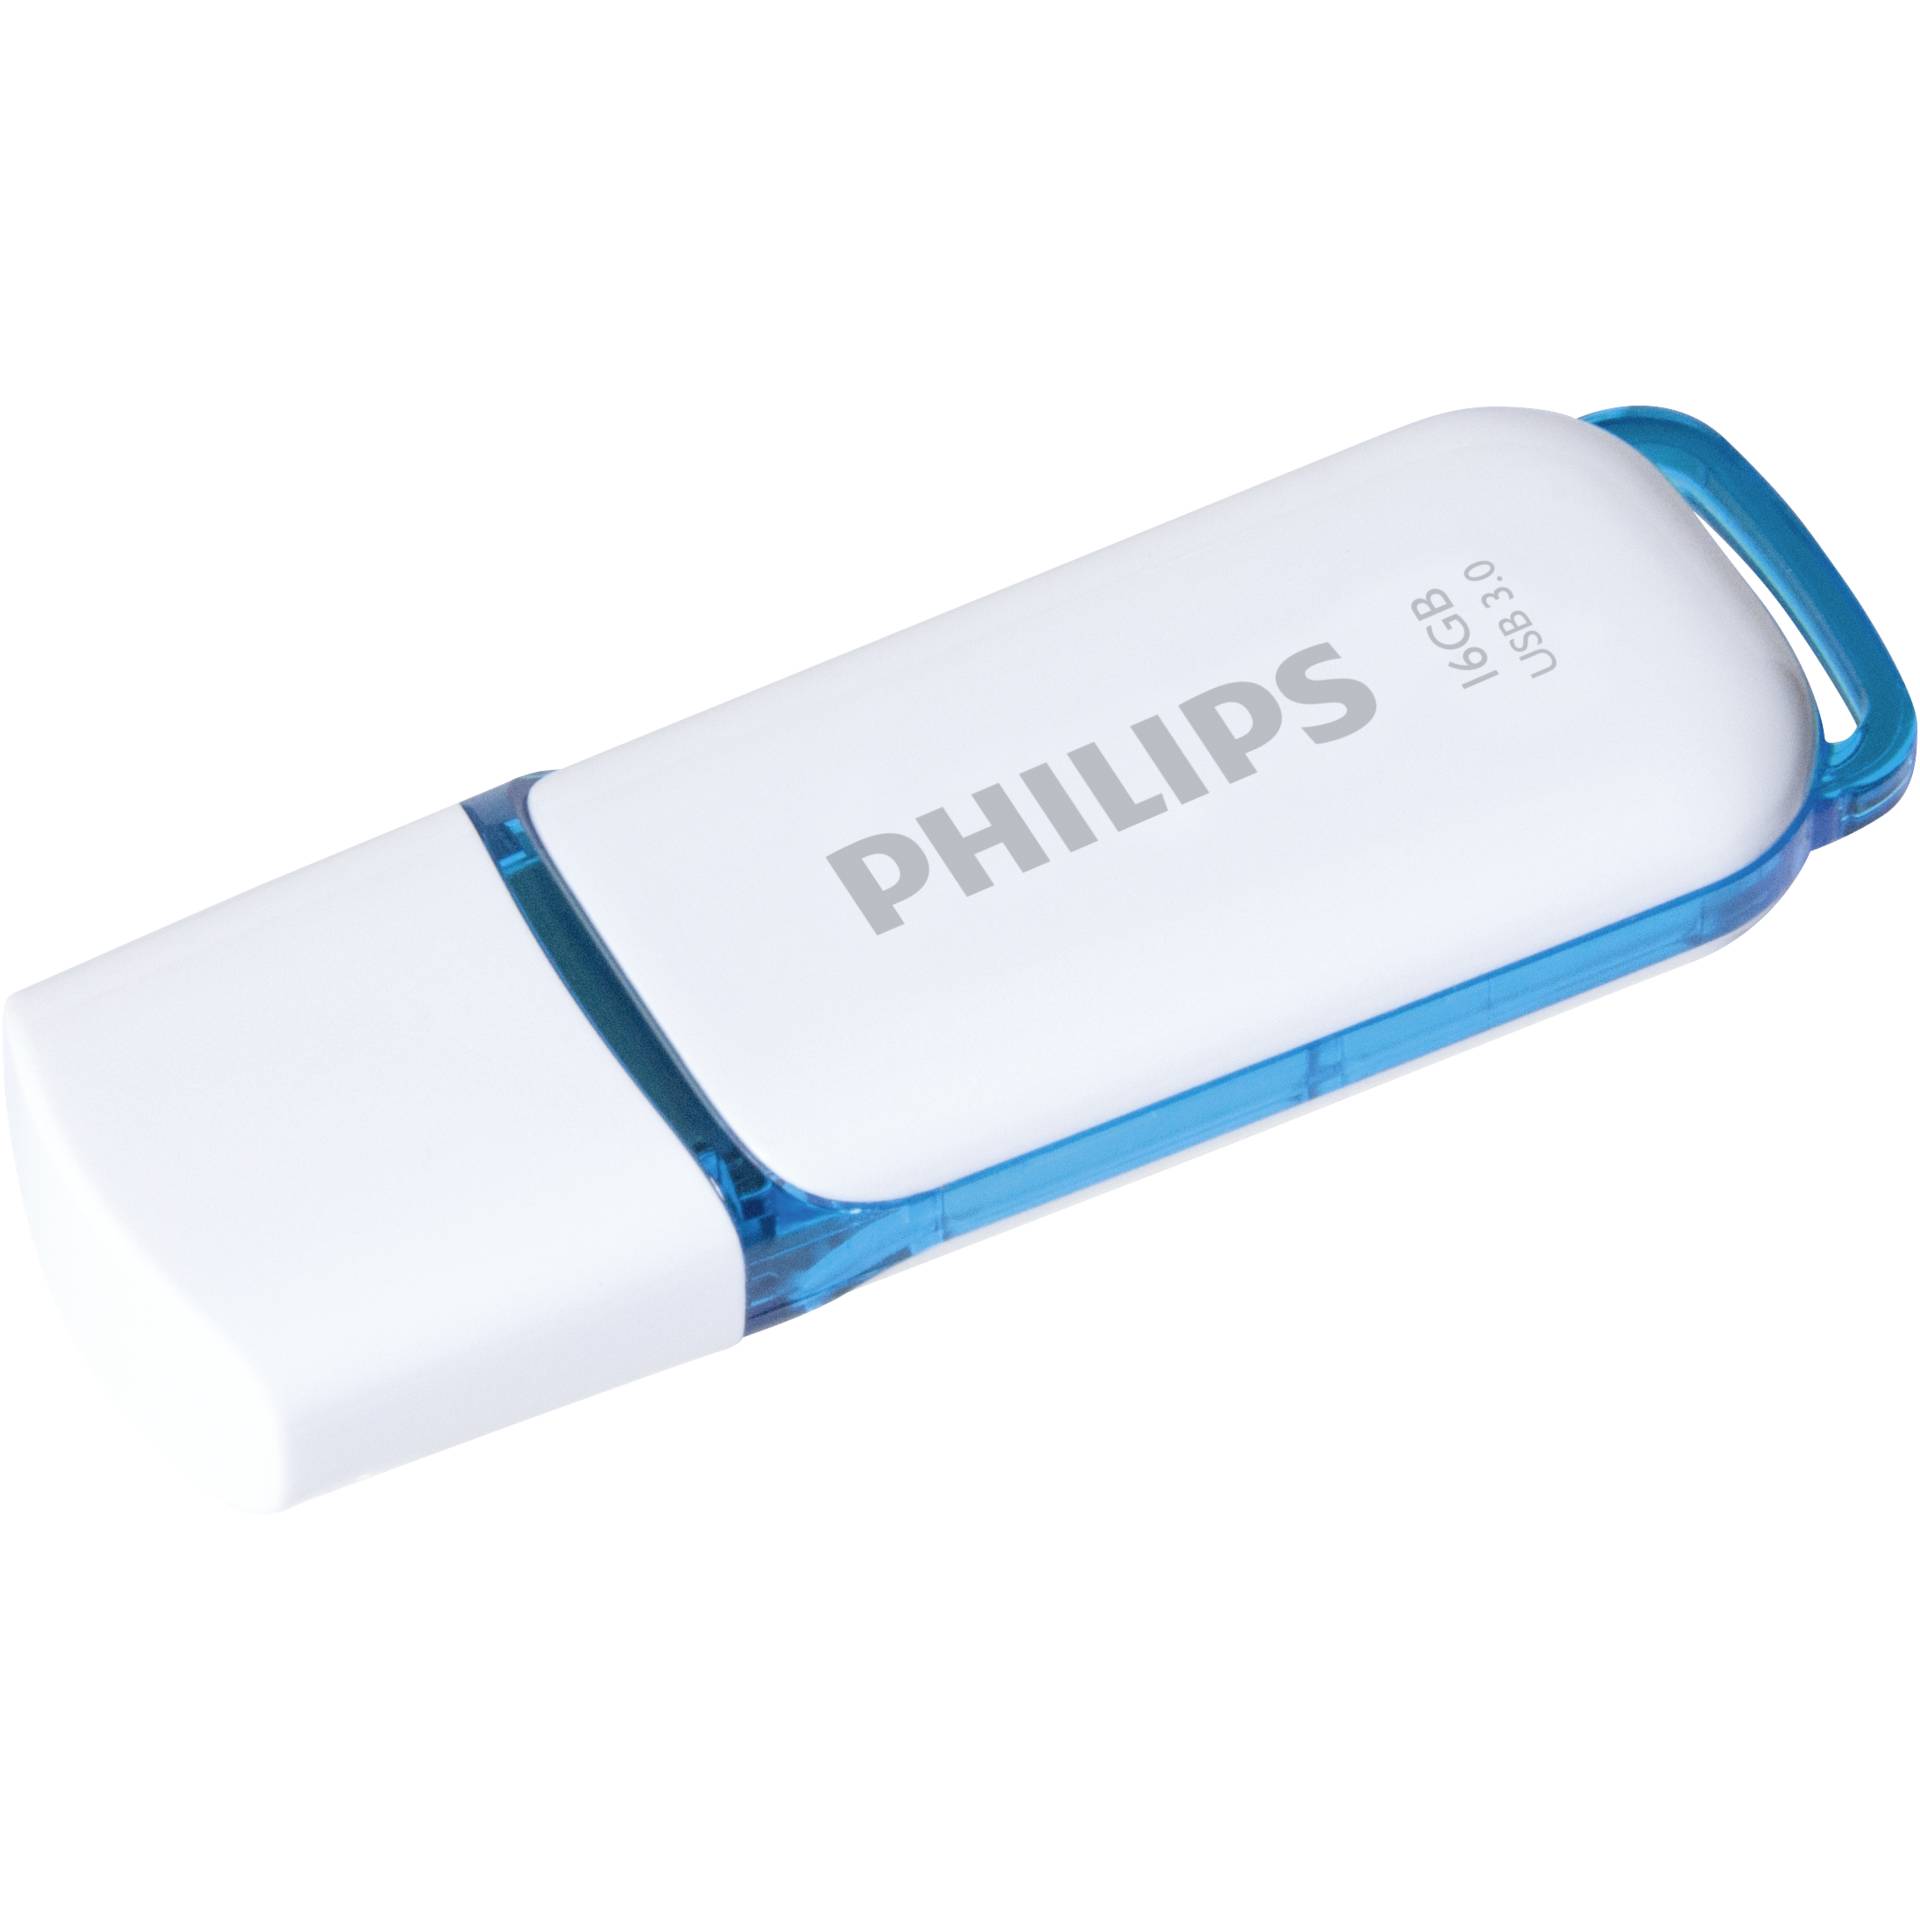 Philips USB 3.0             16GB Snow Edition blu